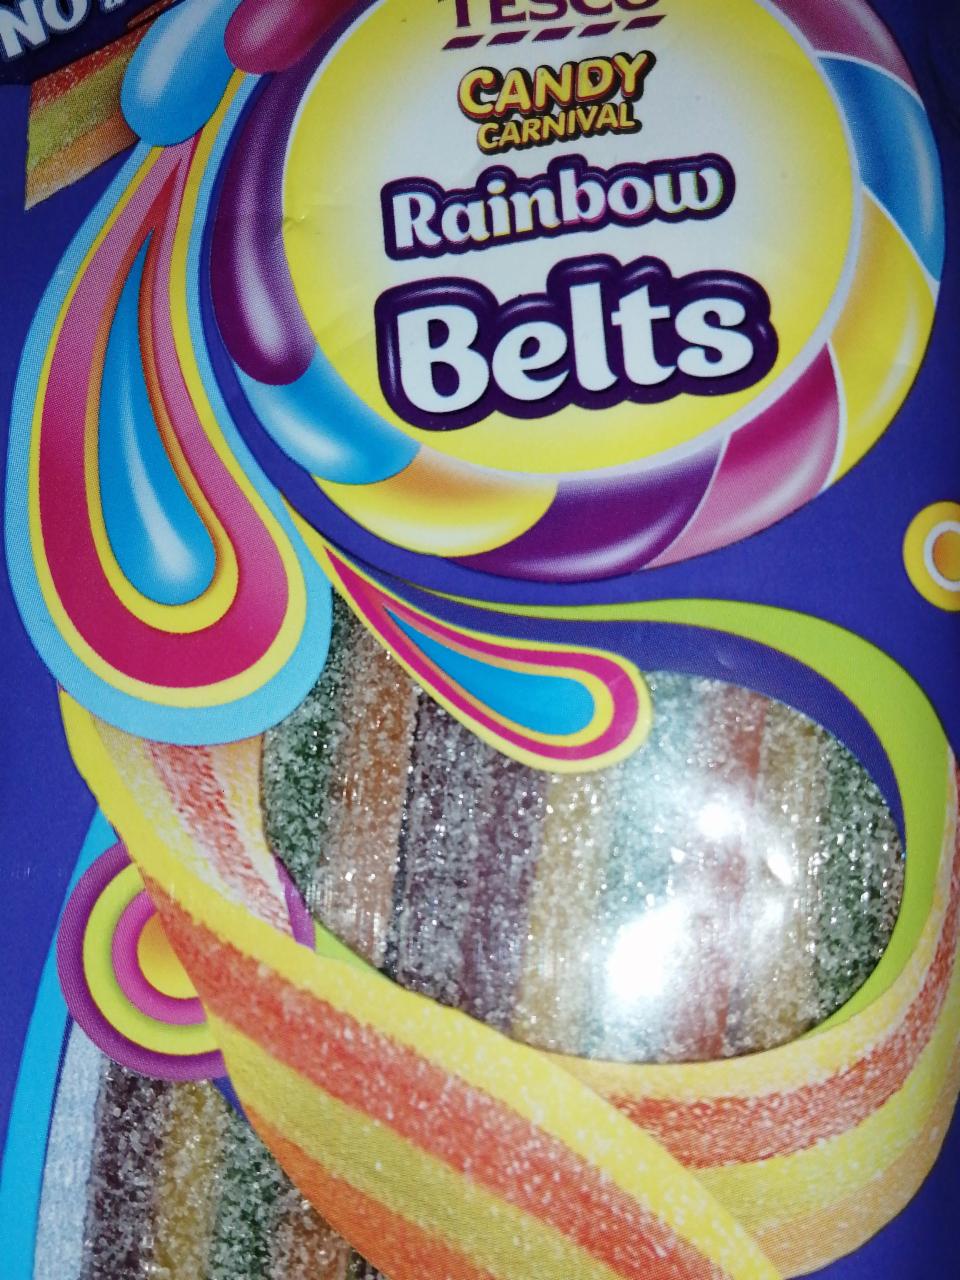 Fotografie - Candy Carnival Rainbow Belts Tesco